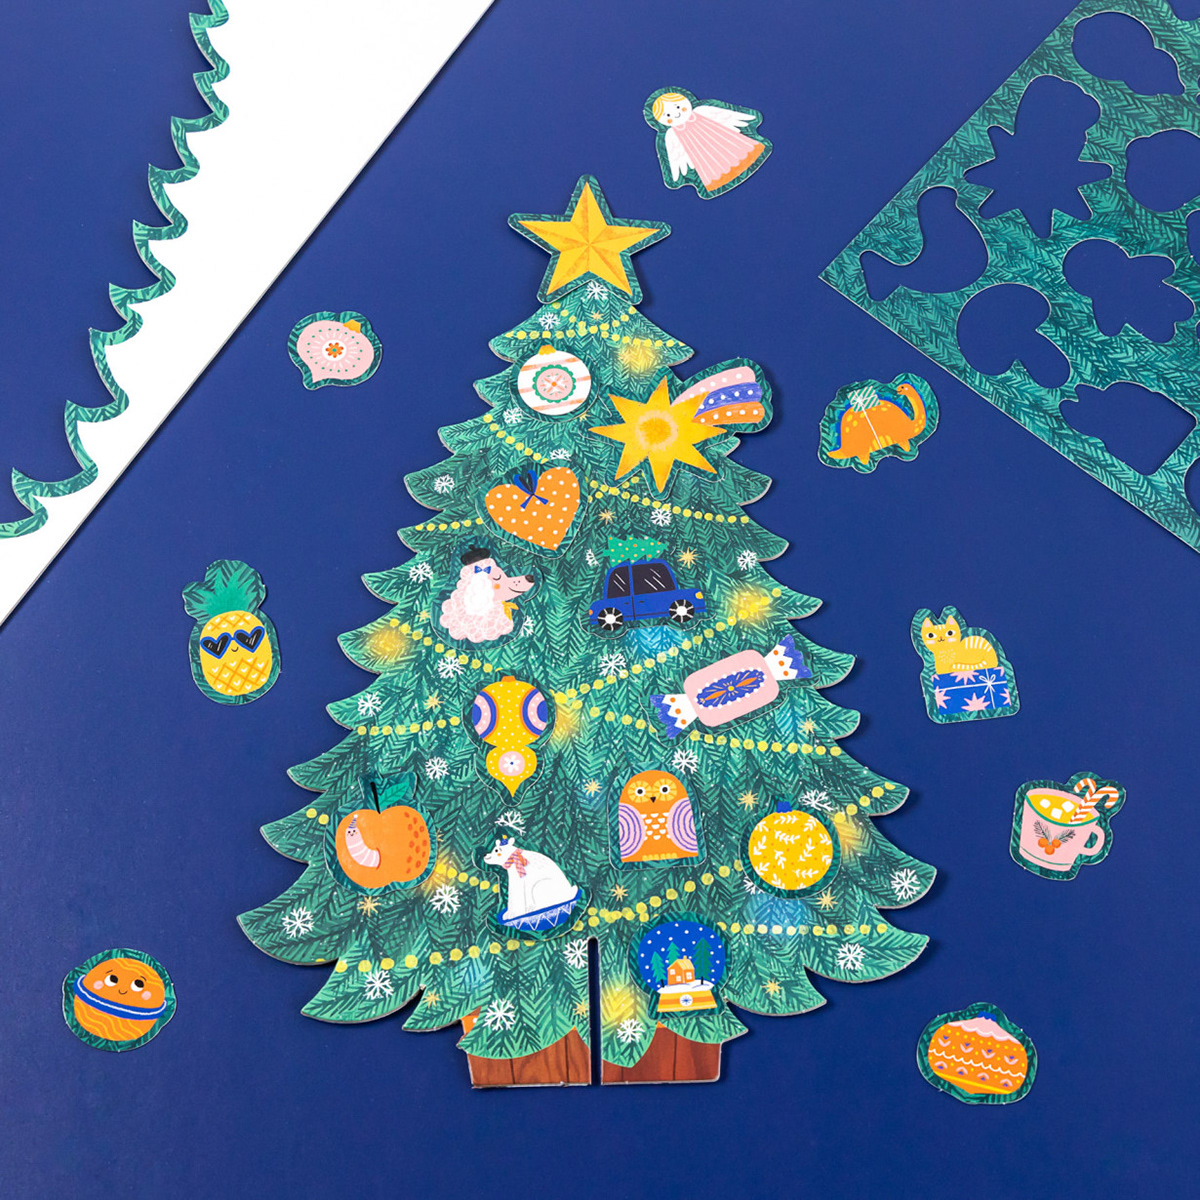 иллюстрация персонаж ёлка Новый год new year Christmas игра game